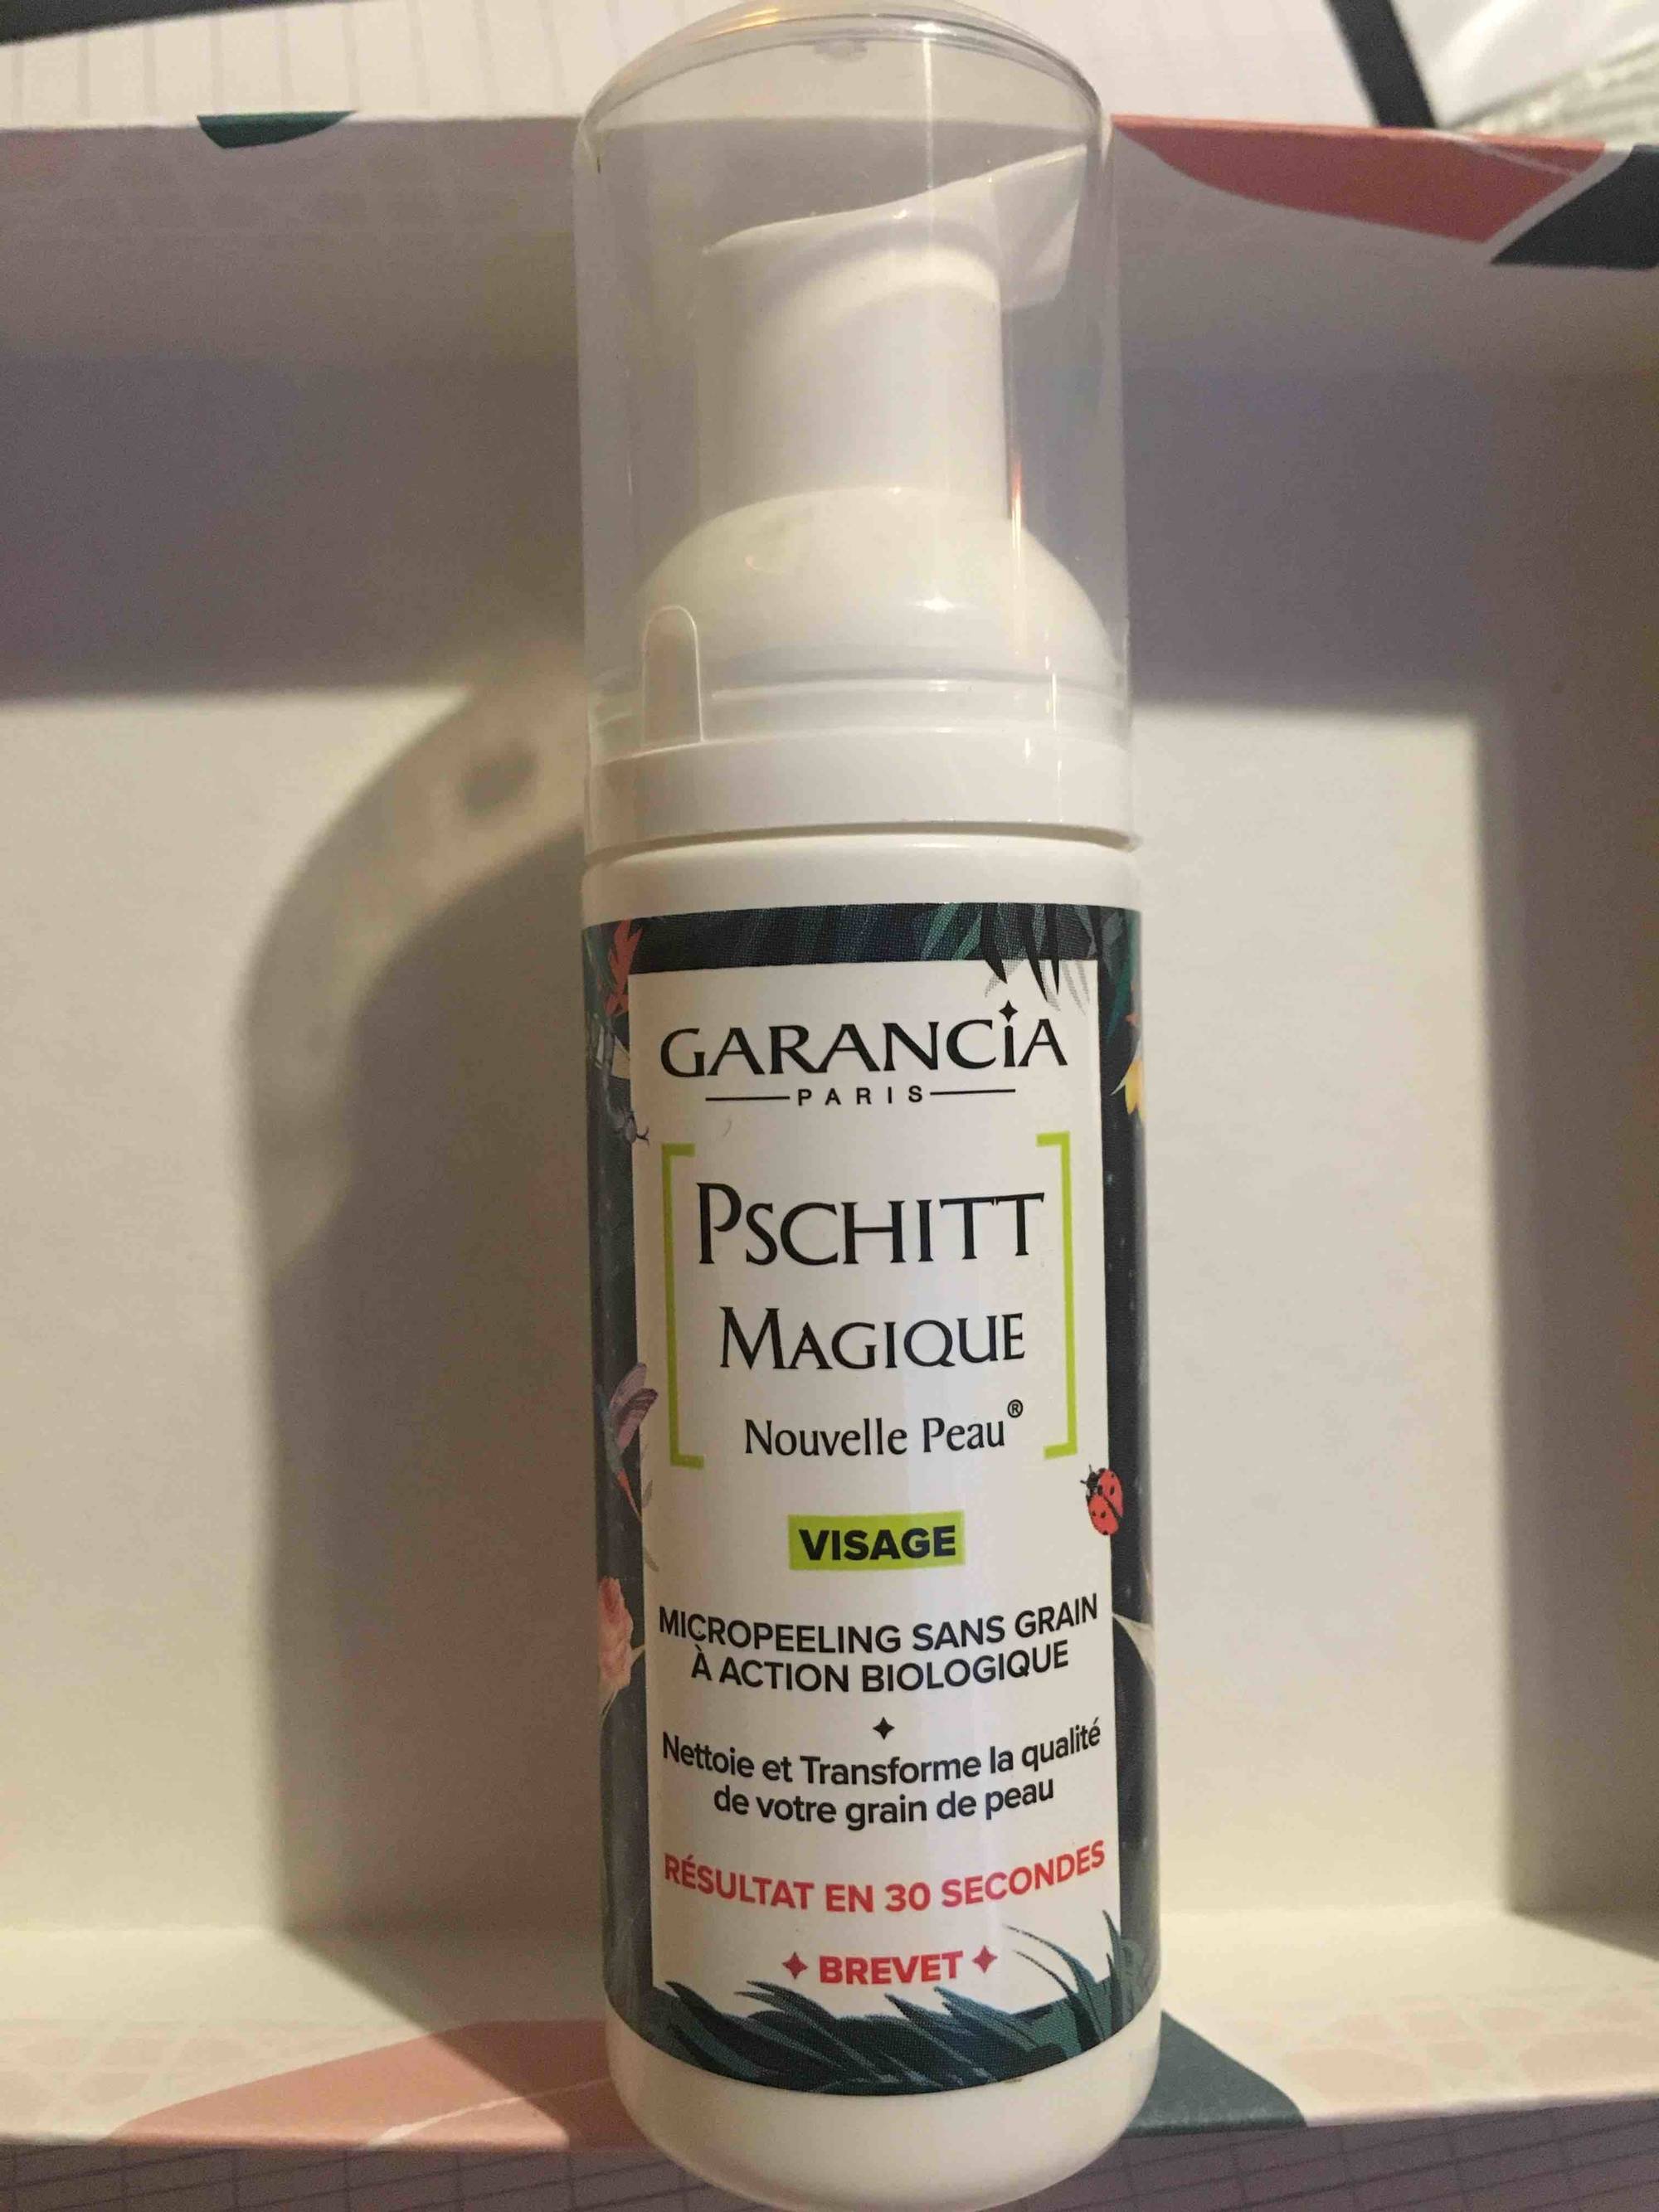 GARANCIA - Pschitt Magique - Micropeeling sans grain à action biologique